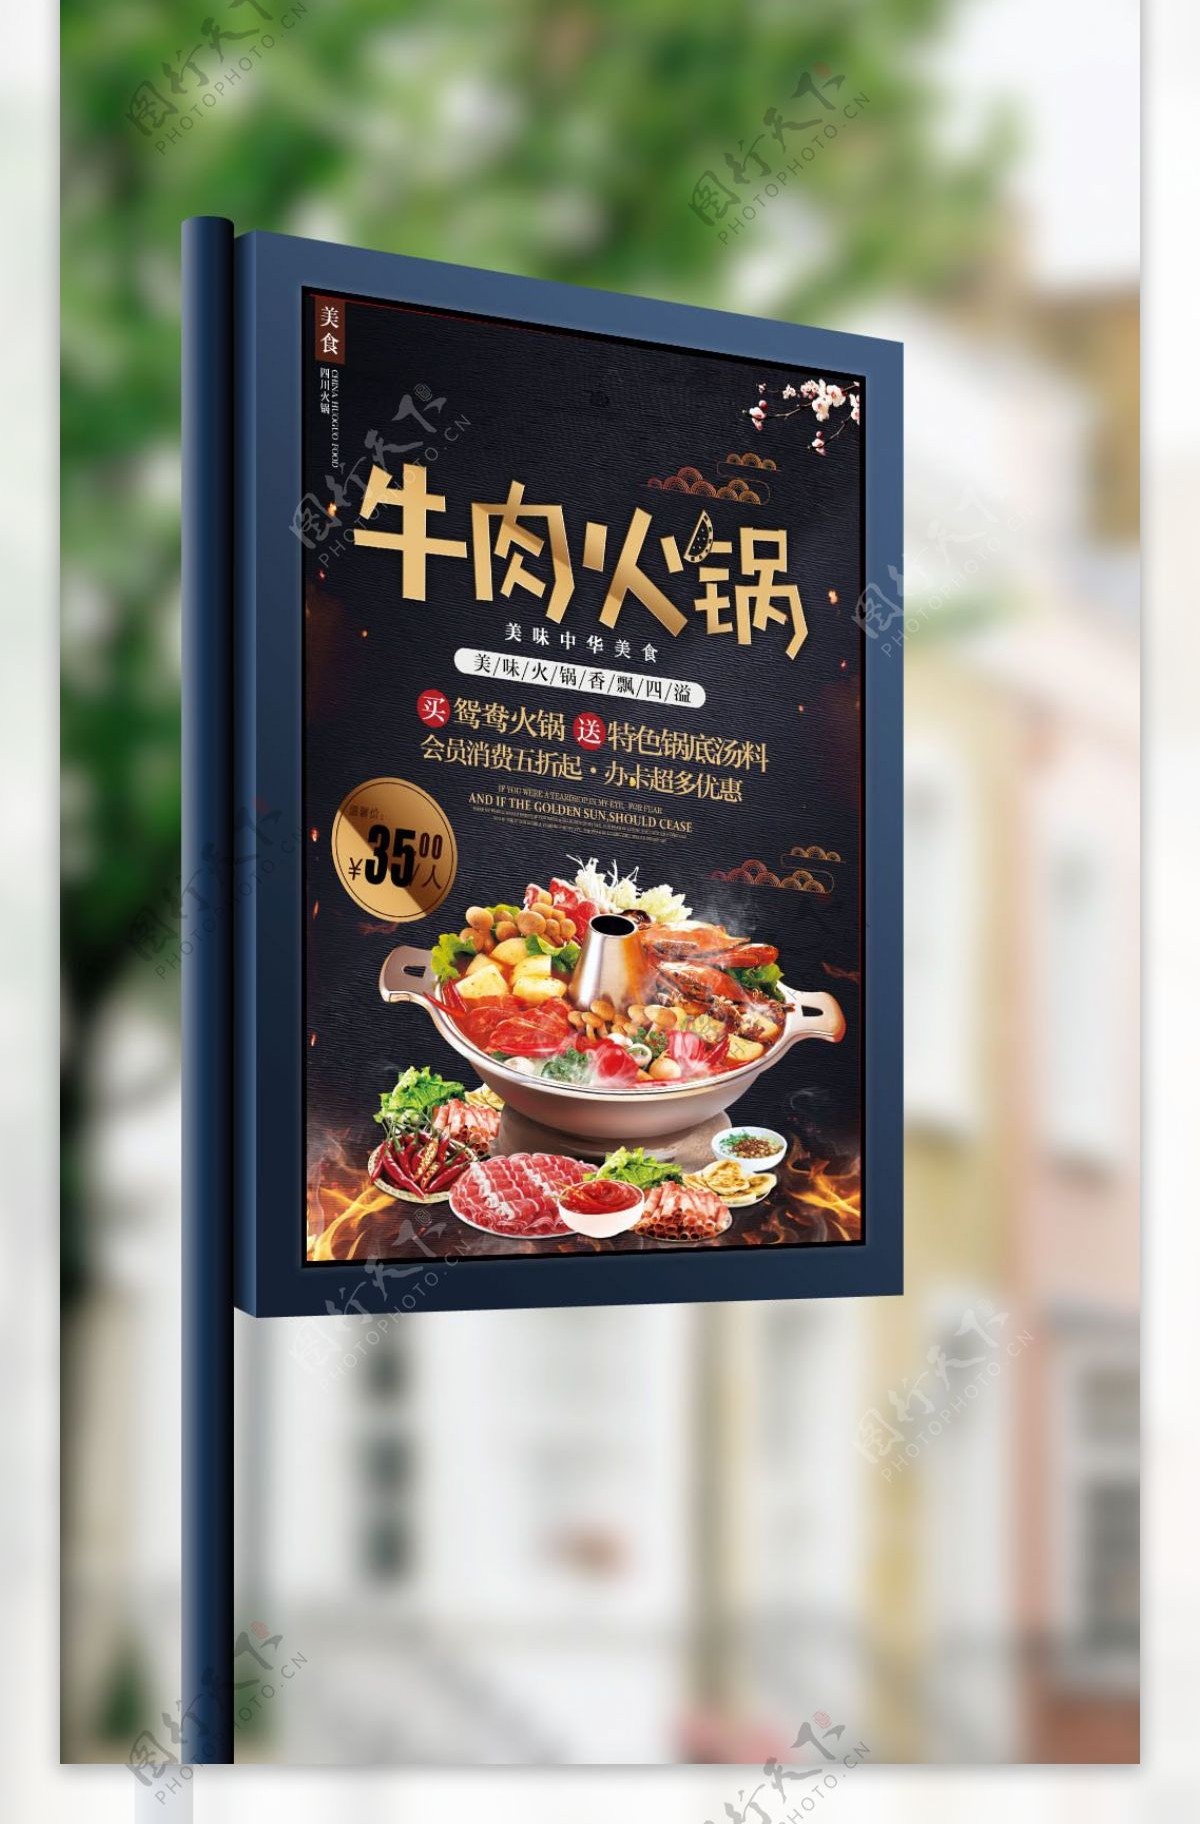 牛肉火锅美食促销海报